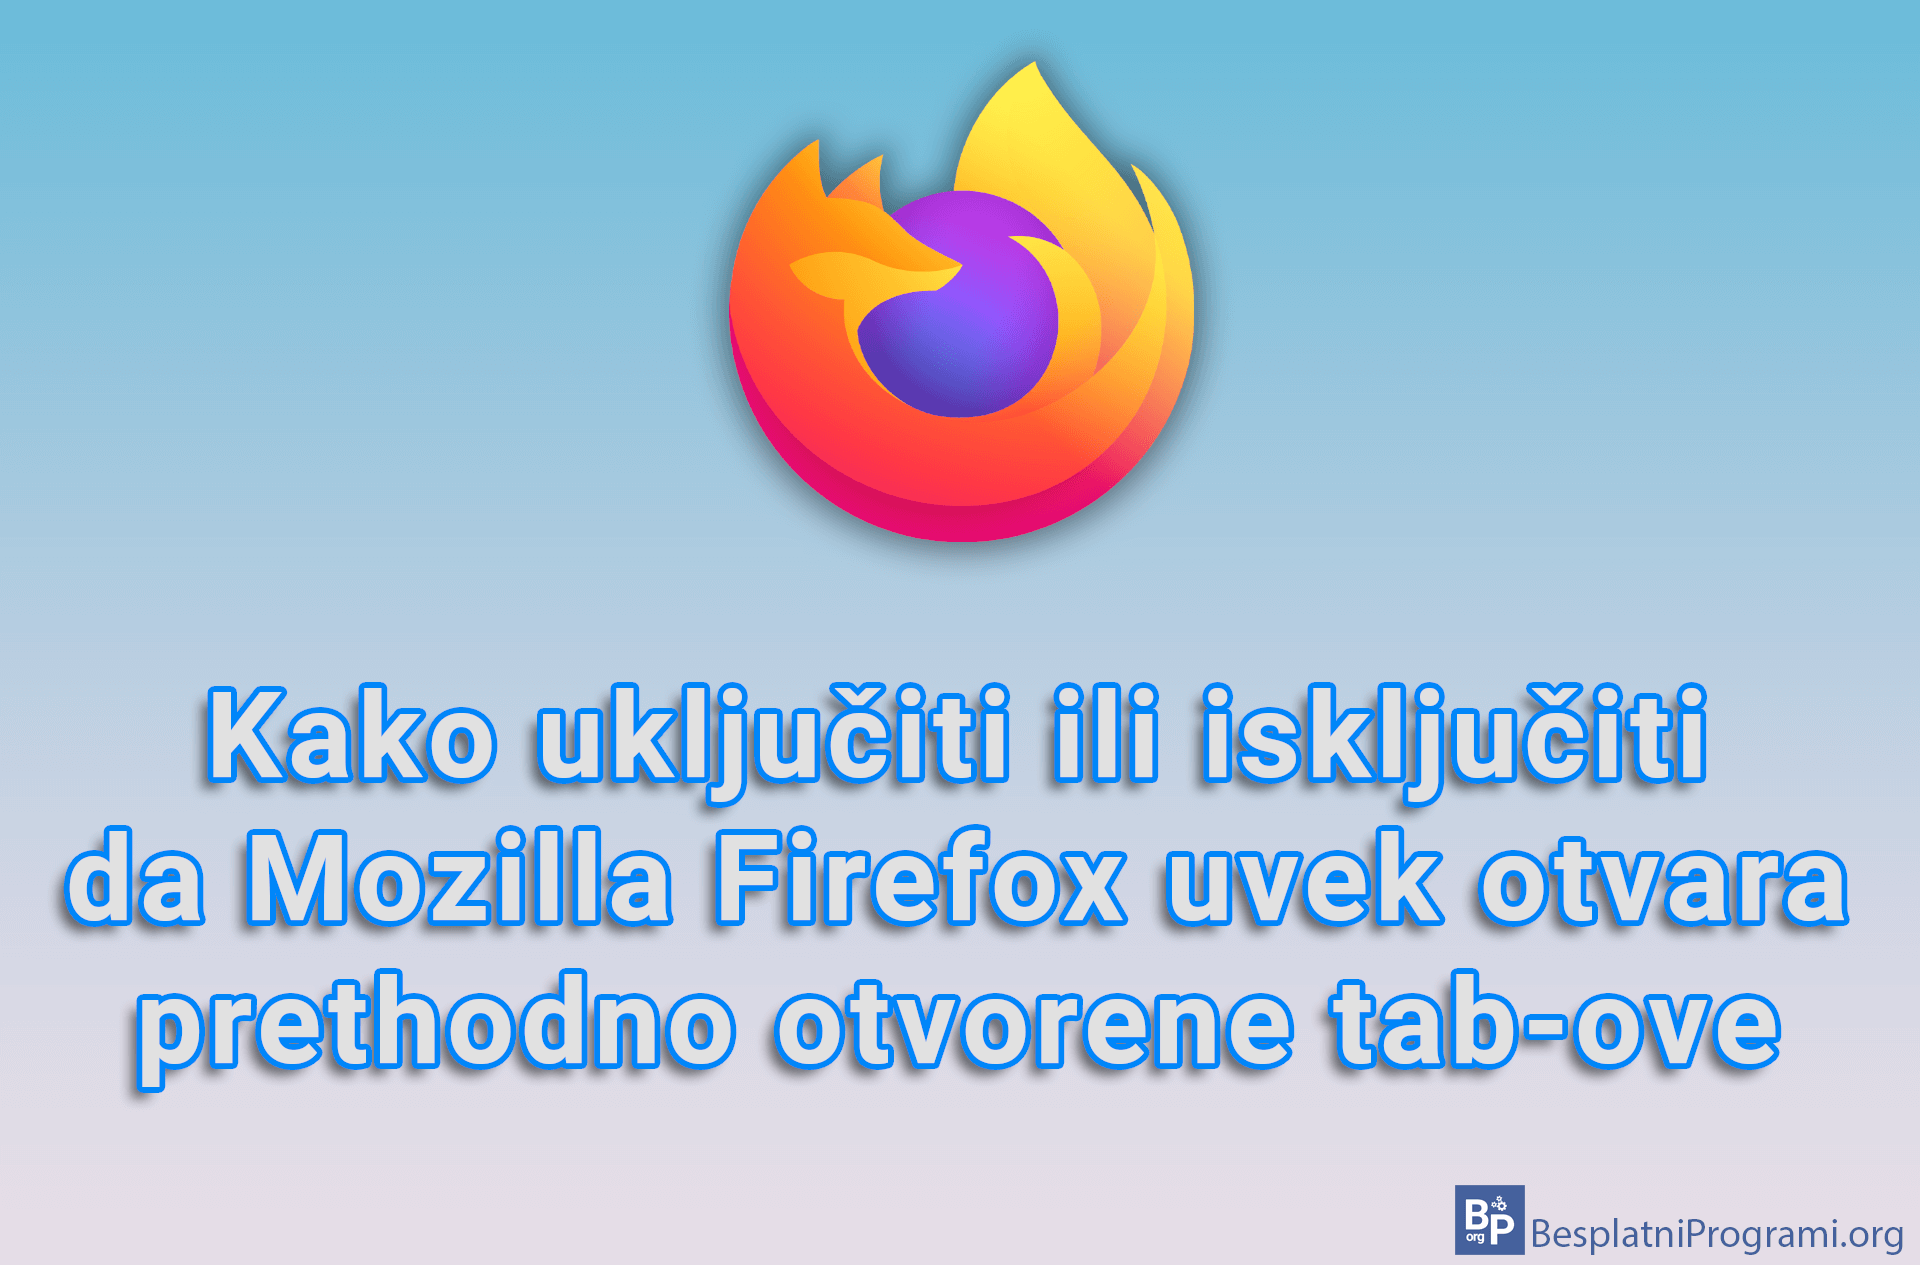 Kako uključiti ili isključiti da Mozilla Firefox uvek otvara prethodno otvorene tab-ove